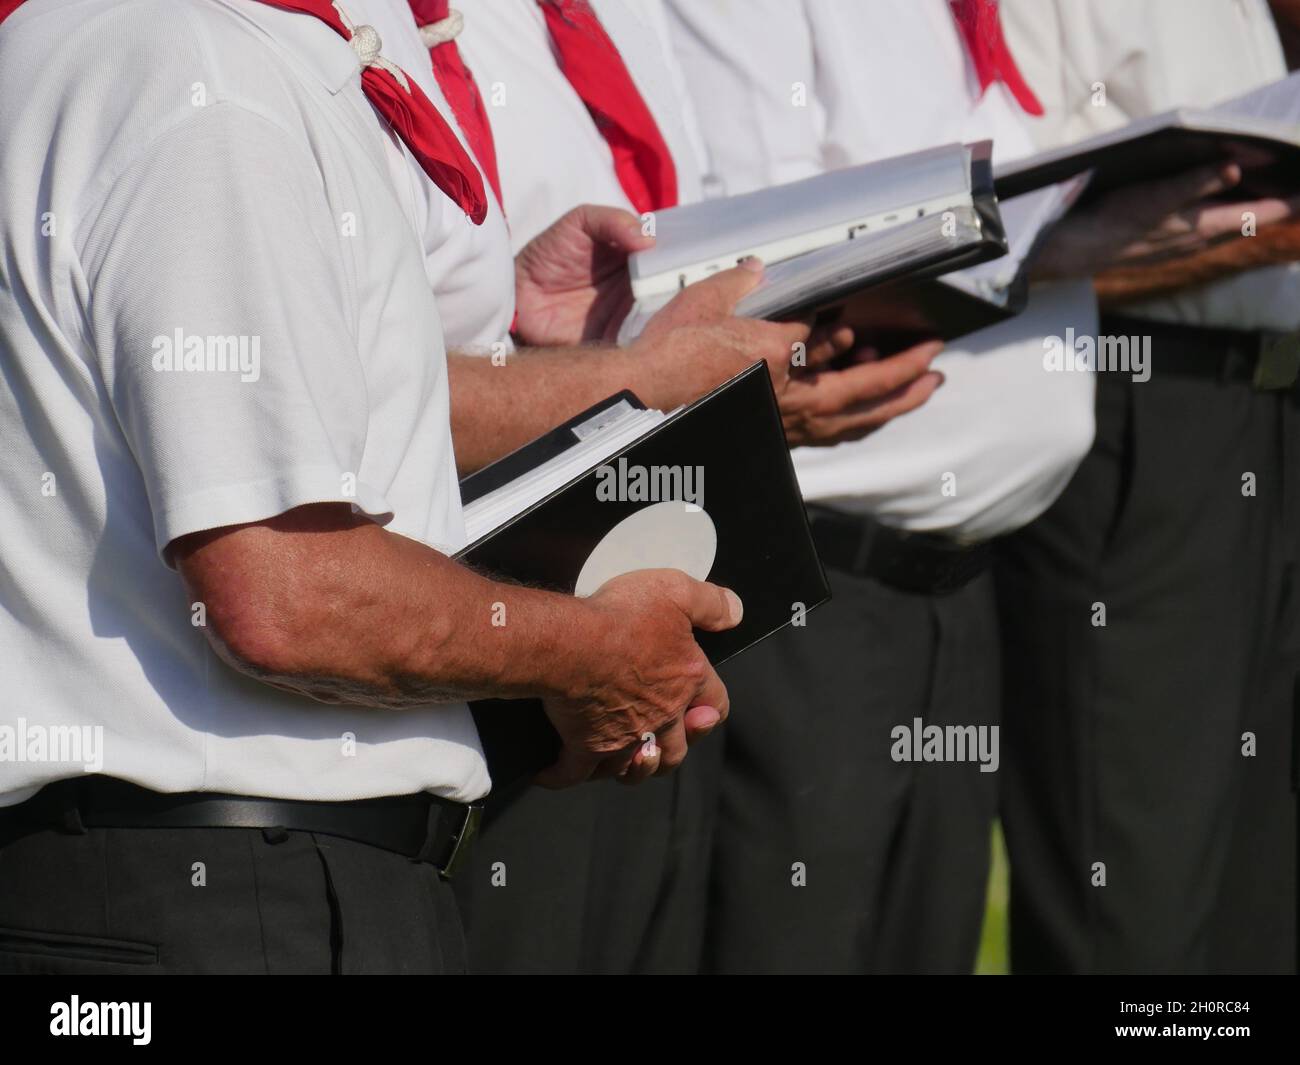 Teilansicht von 3 Sängern eines Chores, die Lehrbücher in der Hand halten, dunkle Hosen, weißes Kurzarm-Hemd, rotes Tuch, verschwommener Hintergrund Stockfoto